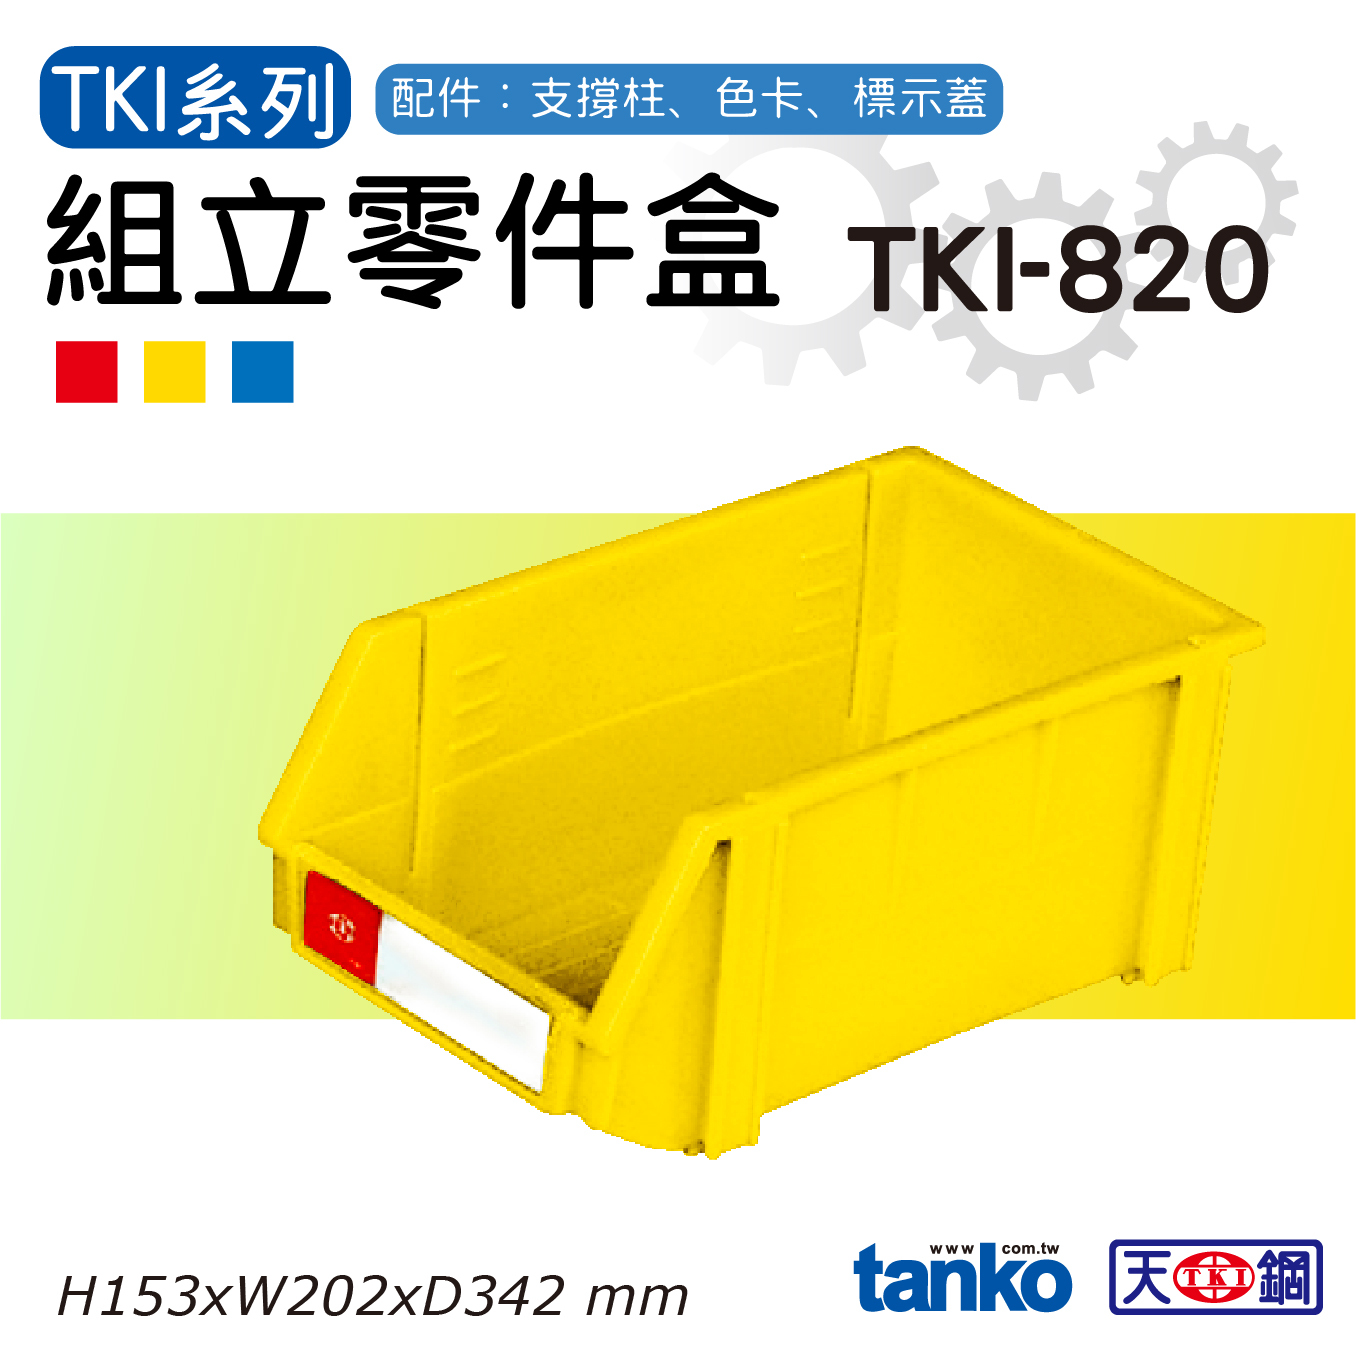 TKI-820-Tanko